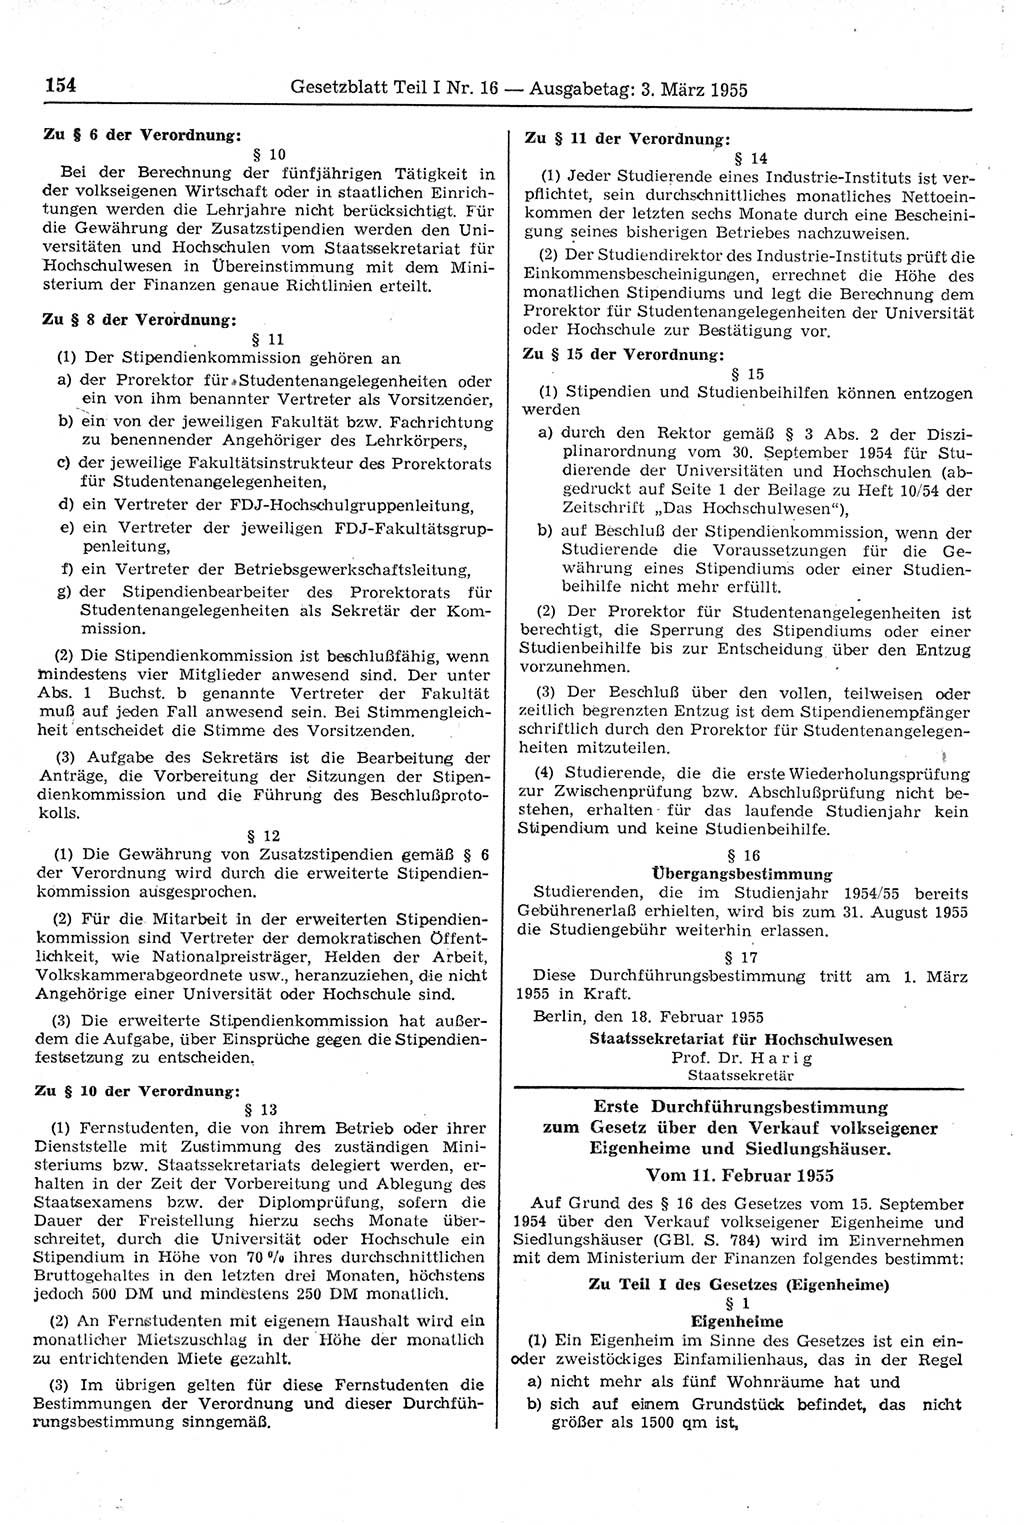 Gesetzblatt (GBl.) der Deutschen Demokratischen Republik (DDR) Teil Ⅰ 1955, Seite 154 (GBl. DDR Ⅰ 1955, S. 154)